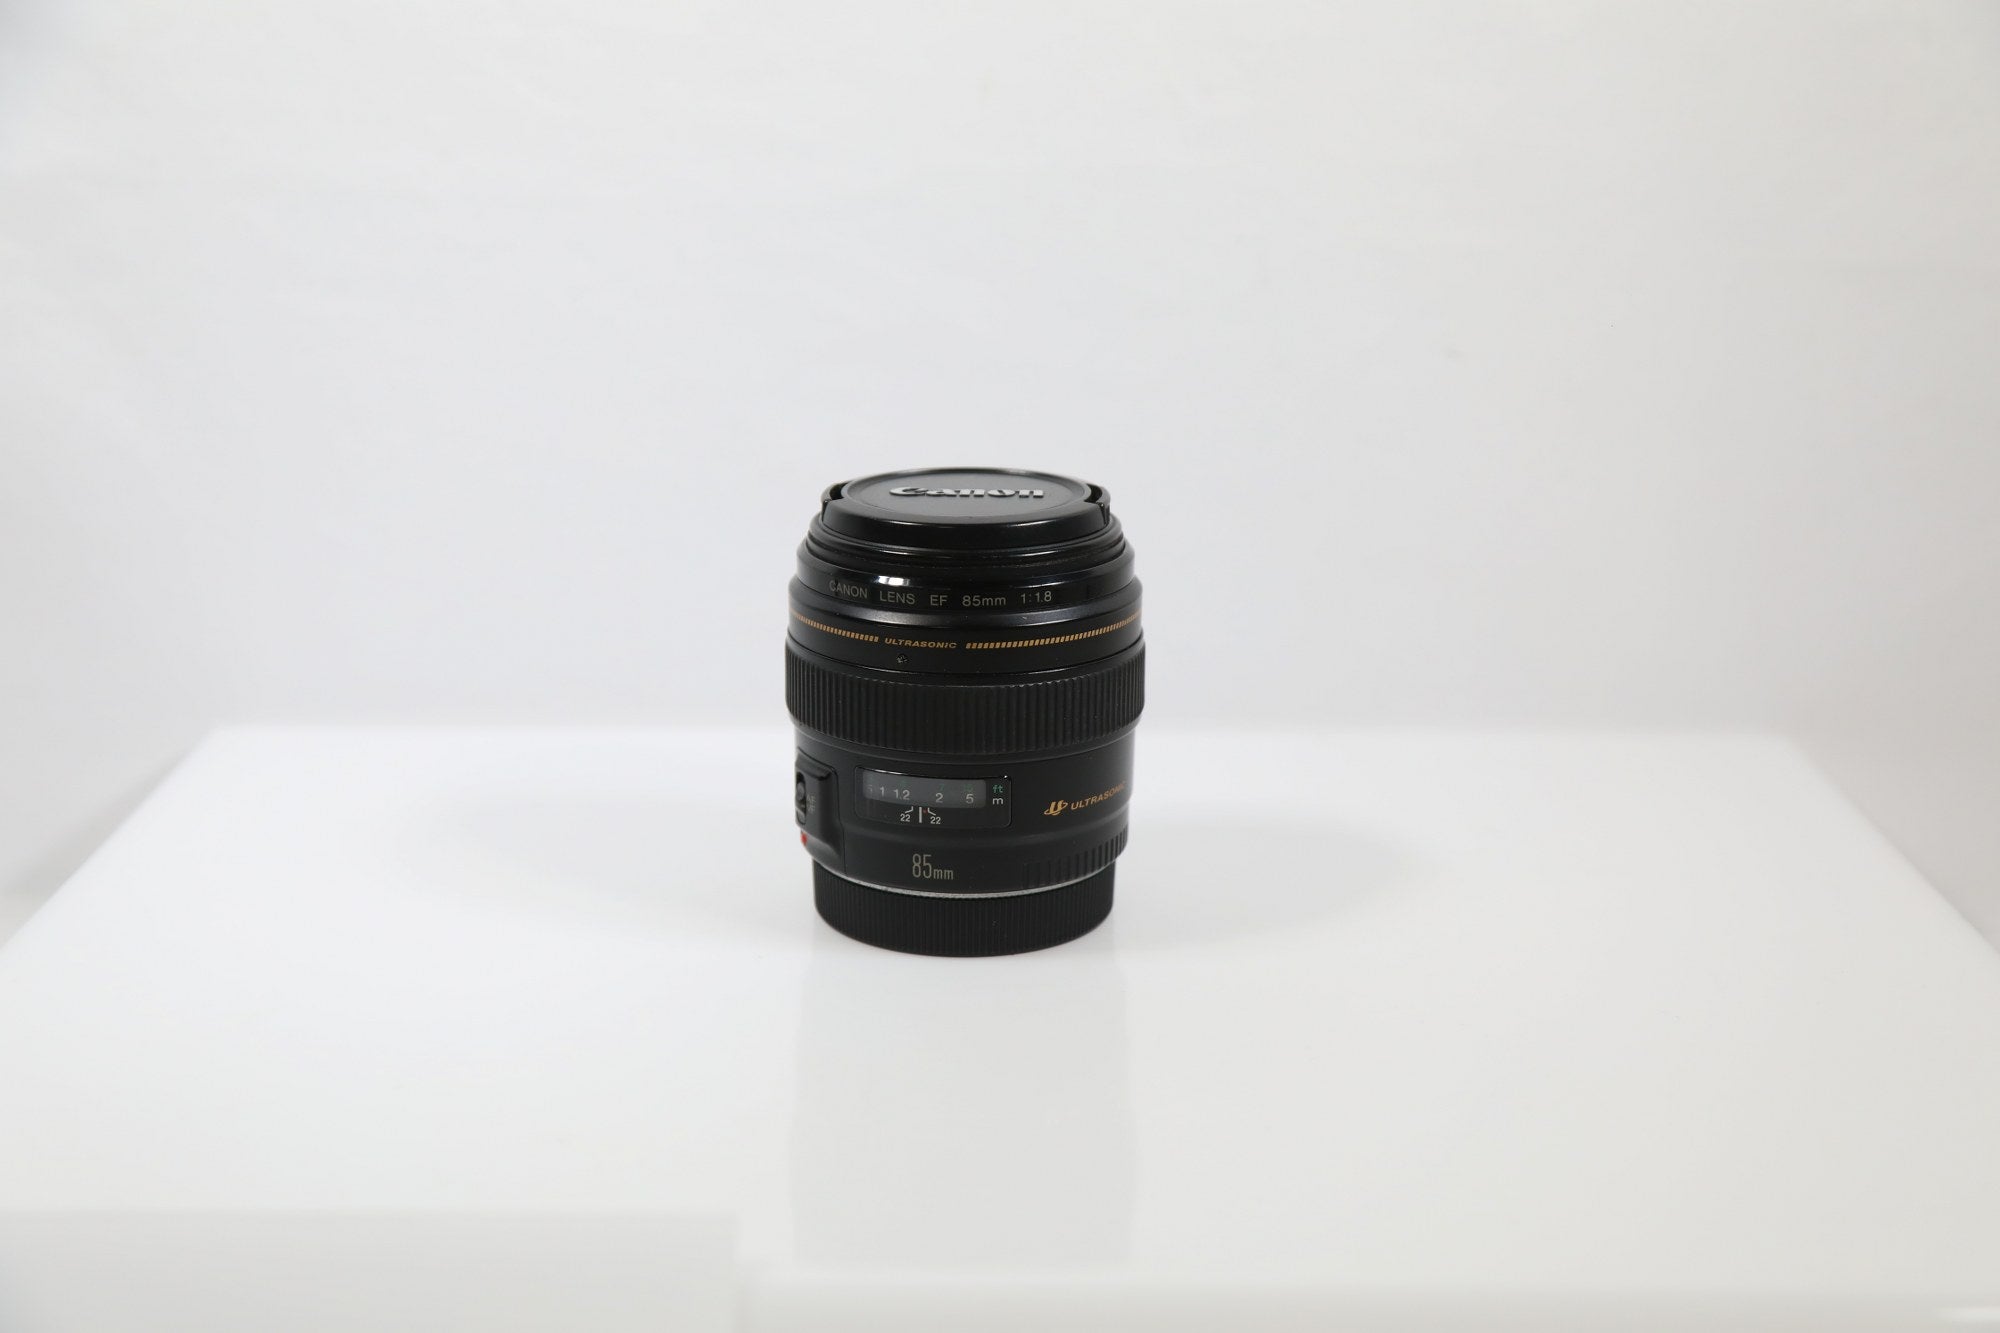 Canon EF 85mm F/1.8 USM - EF-Mount Lens/Full-Frame Format